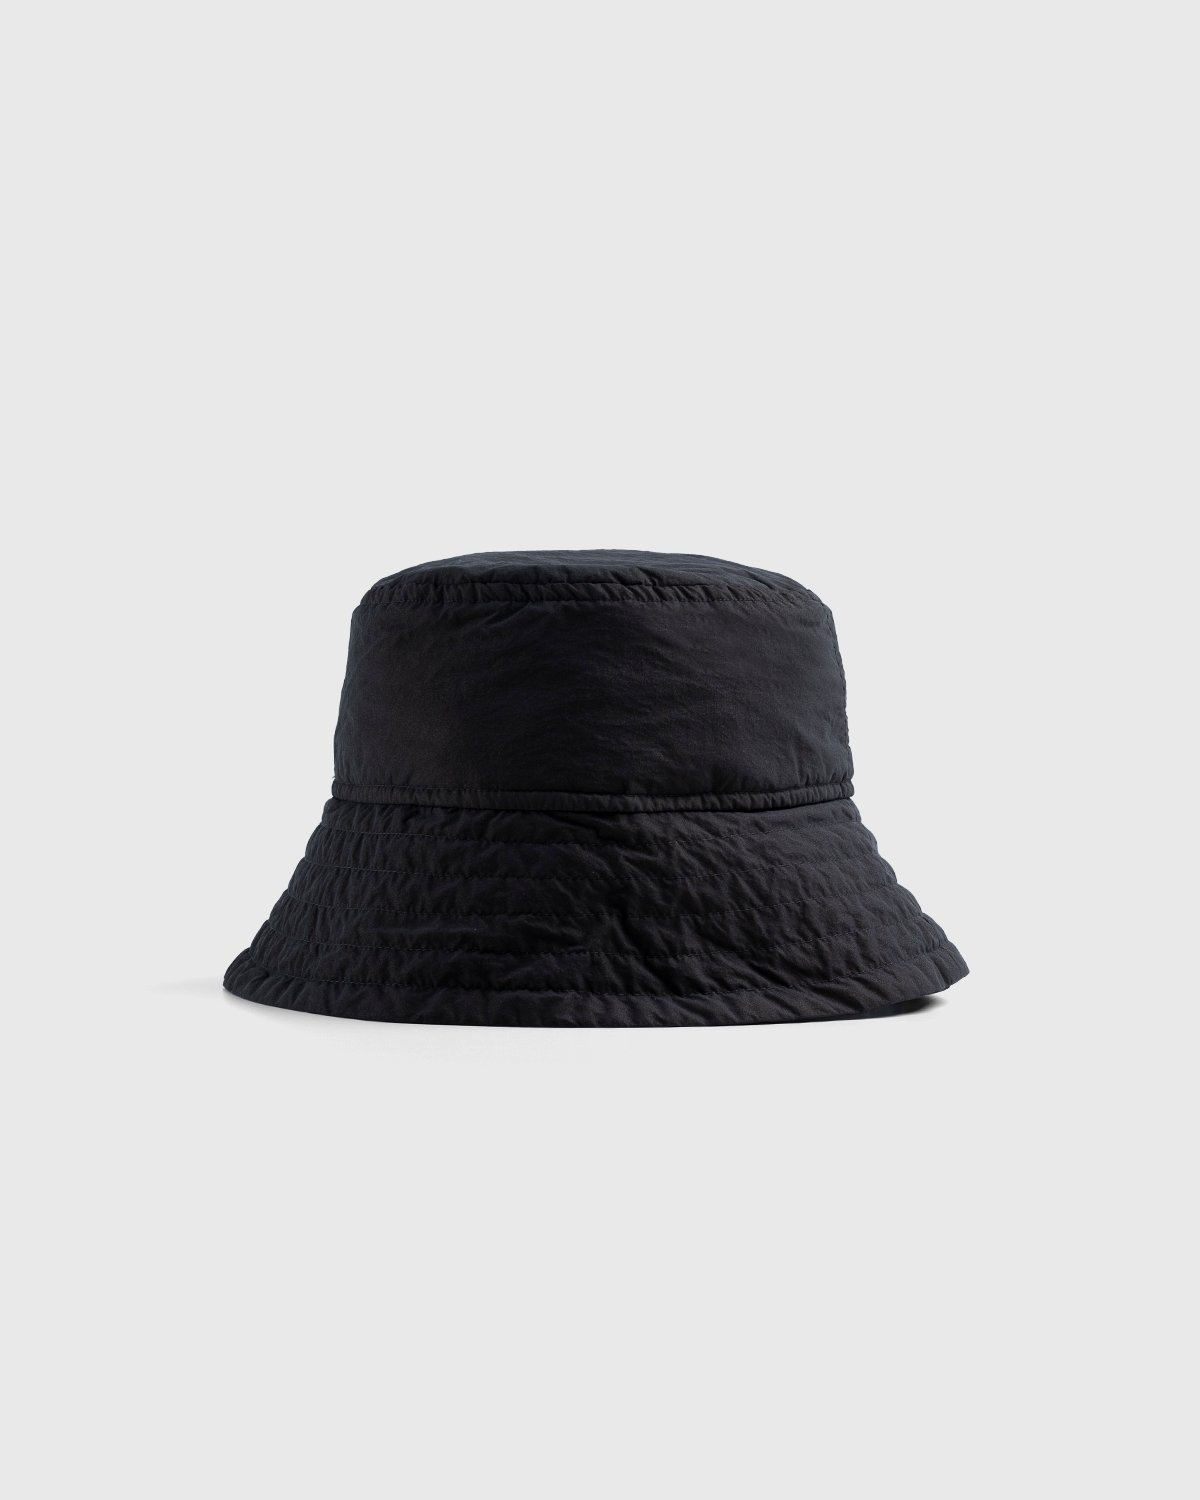 Dries van Noten – Gilly Hat Kaki - Bucket Hats - Green - Image 1